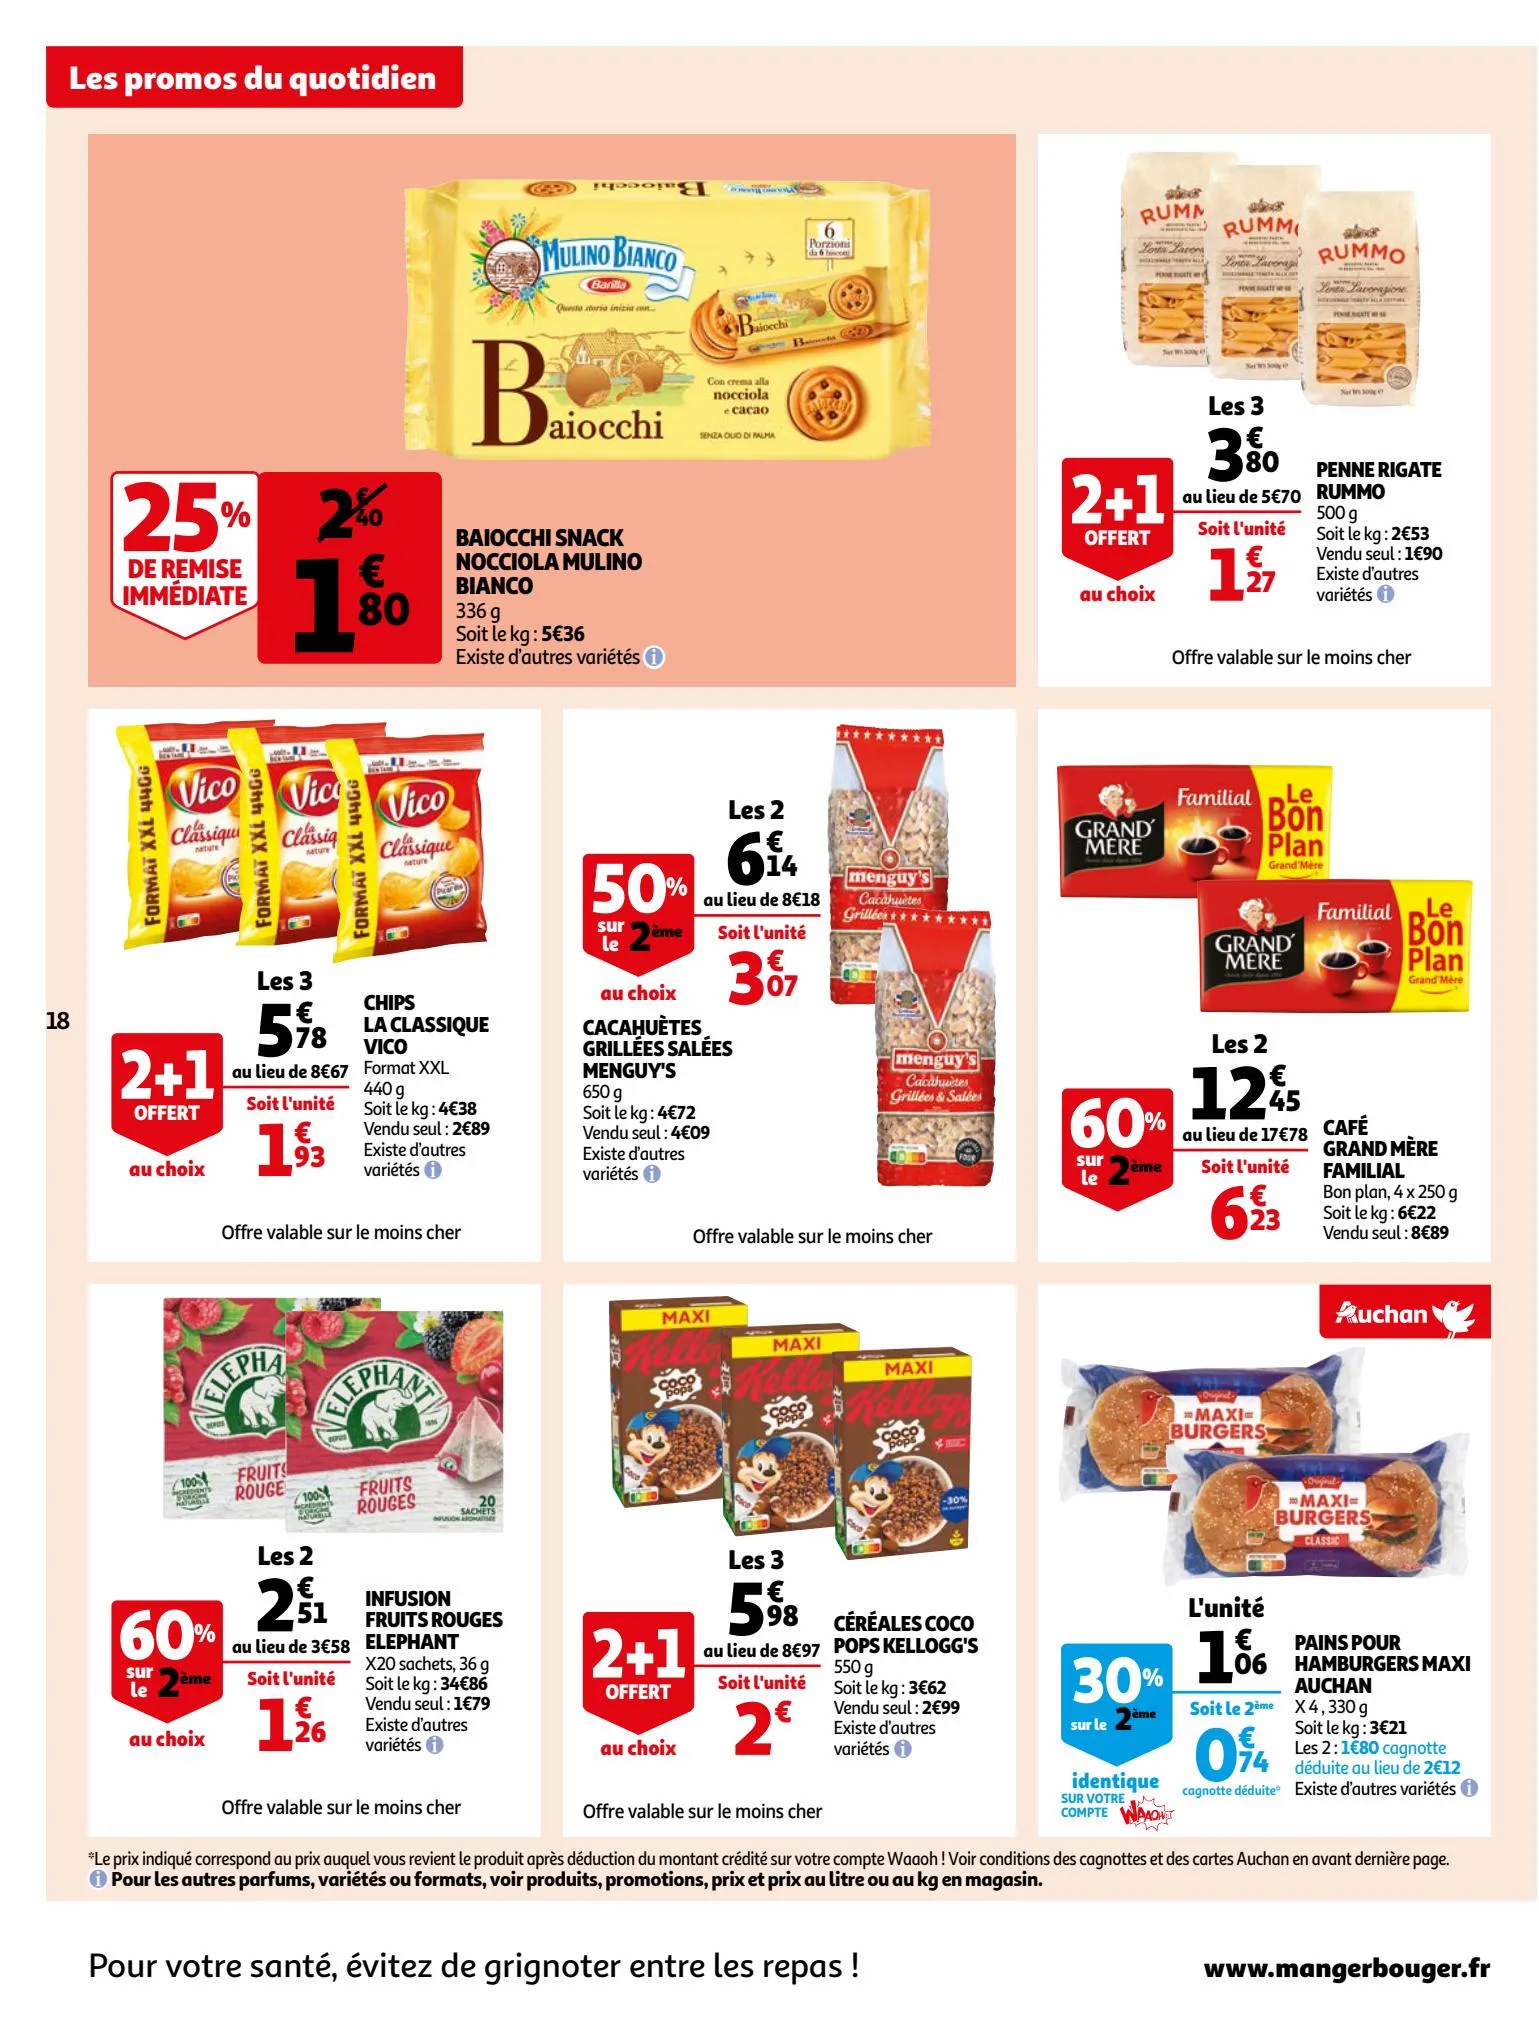 Catalogue Bio ou filière responsable, nos produits ont tout bon dans votre supermarché, page 00018